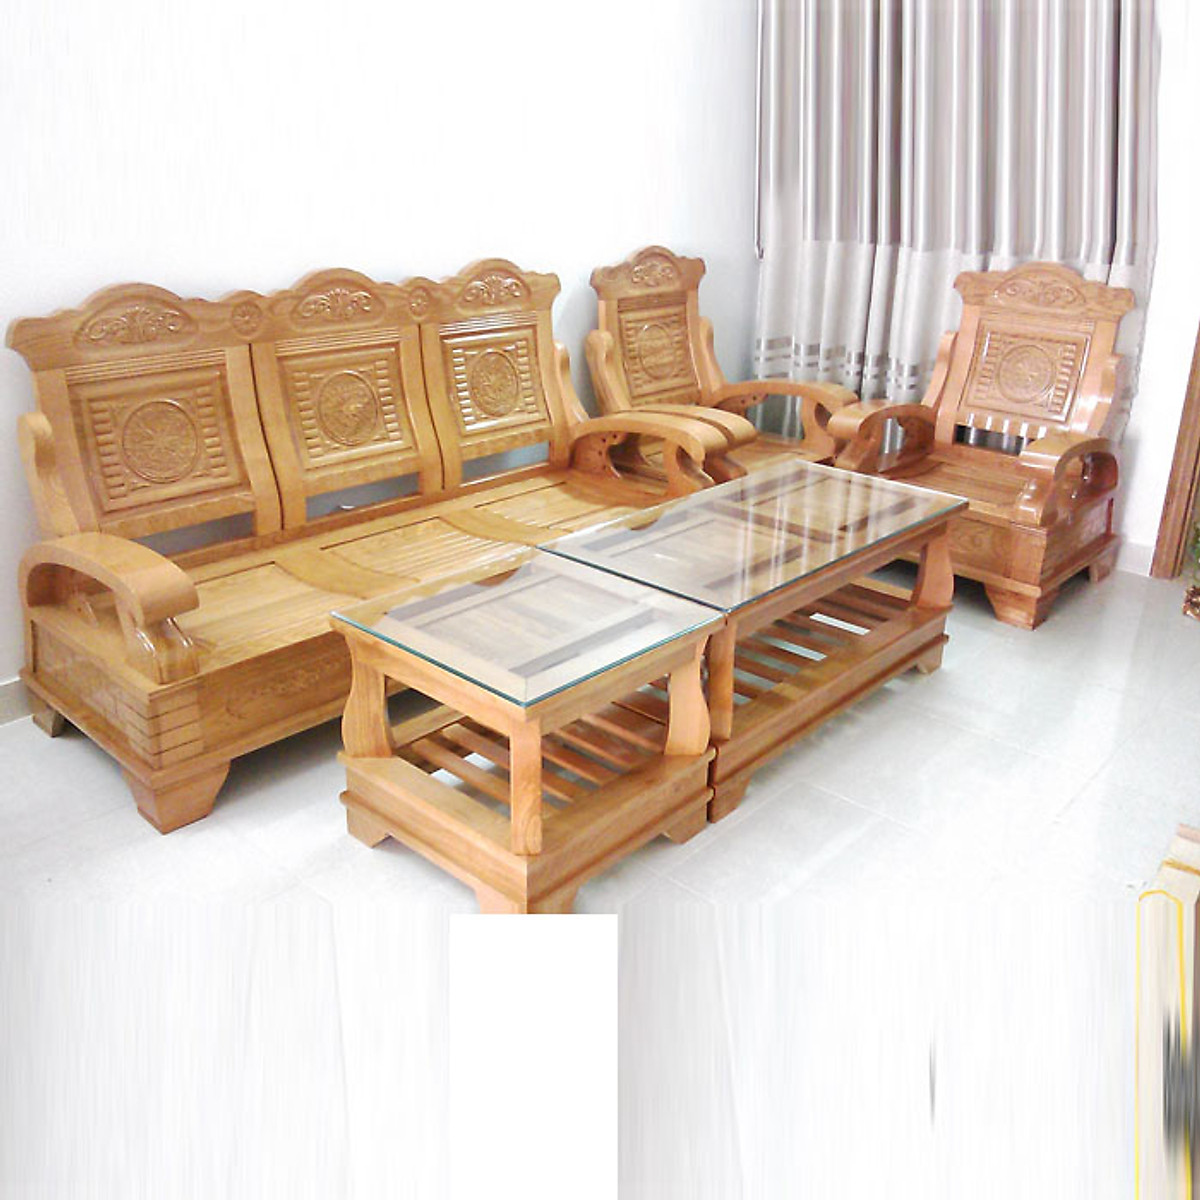 Bộ bàn ghế gỗ phòng khách 5 món: Với thiết kế đẹp mắt và tinh tế, bộ bàn ghế gỗ phòng khách 5 món sẽ giúp cho không gian phòng khách của bạn trở nên đầy đủ và tiện nghi hơn. Sản phẩm được sản xuất từ vật liệu gỗ cao cấp cùng thiết kế độc đáo, chắc chắn sẽ mang đến cho bạn sự hài lòng tuyệt đối. Hãy bấm vào hình ảnh để khám phá sản phẩm tuyệt vời này.